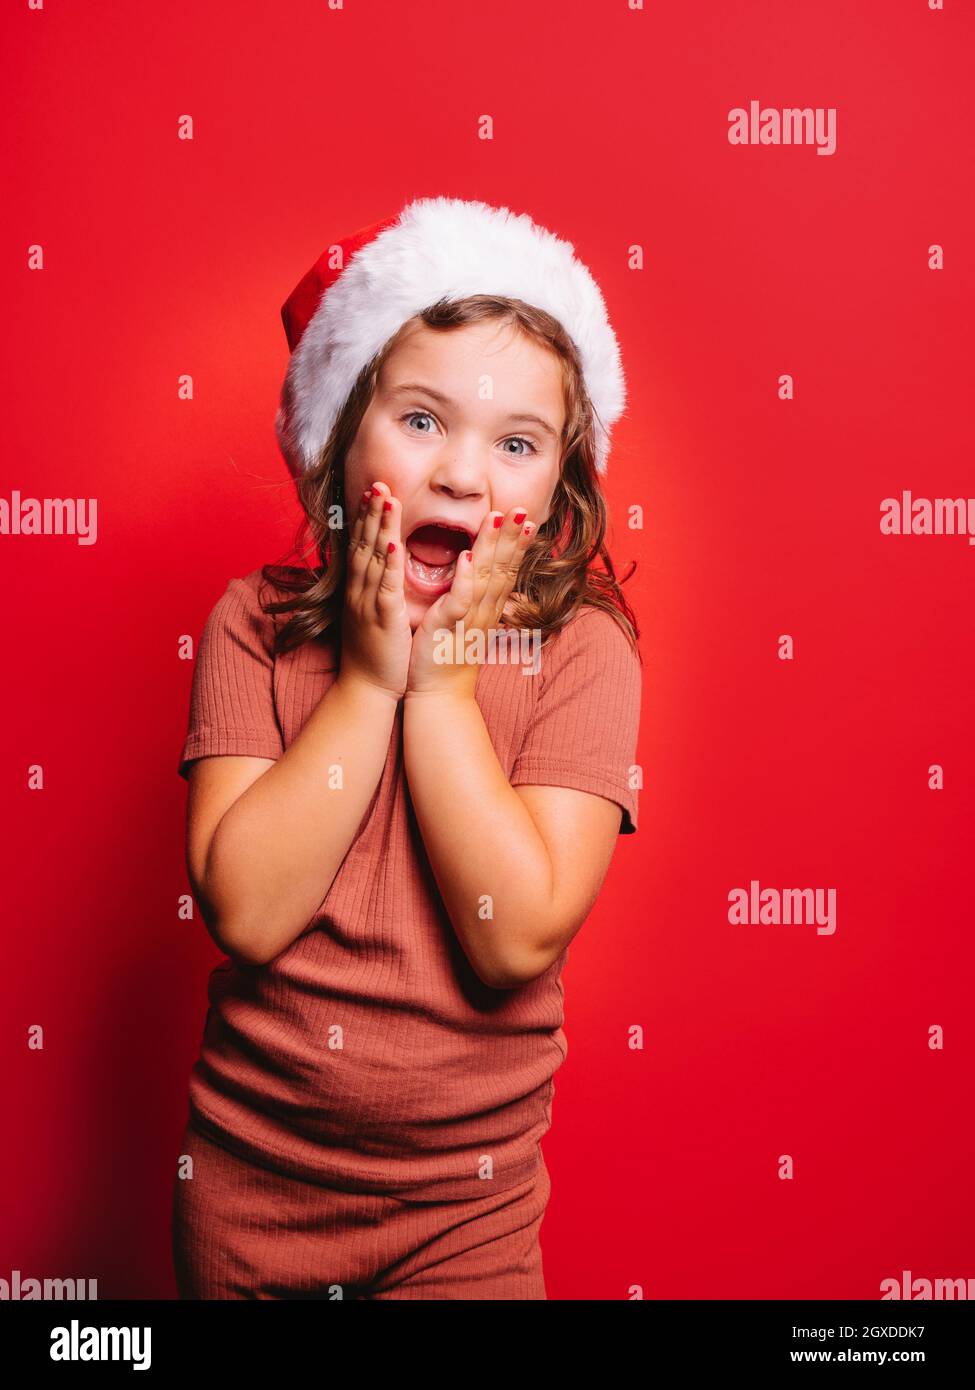 Sorprende ragazza divertente in abiti casual e cappello Santa con capelli ondulati e manicure toccare guance e urlare su sfondo rosso Foto Stock